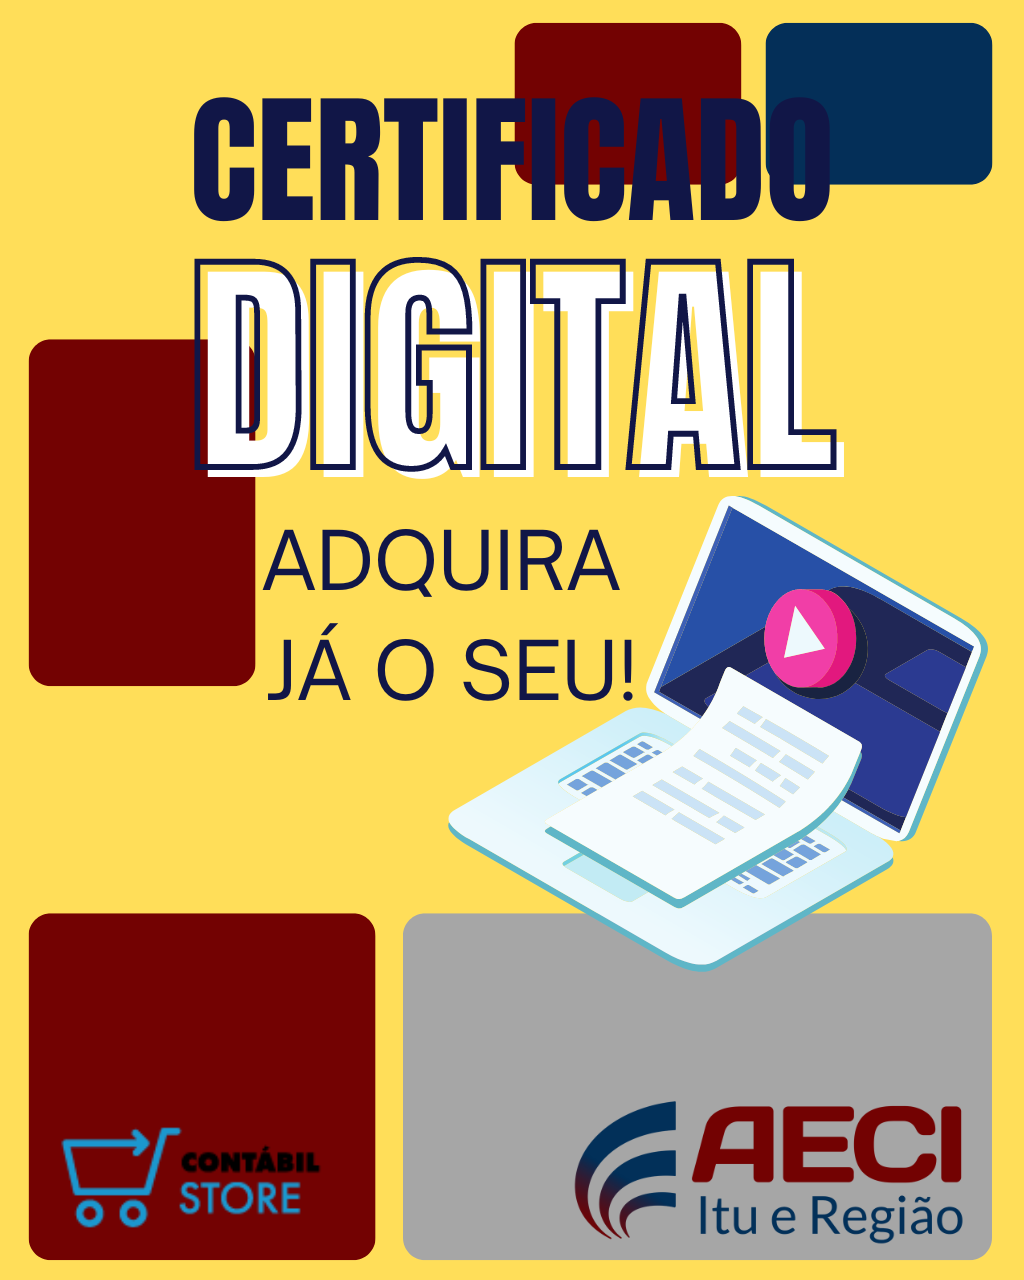 Adquira o seu certificado digital